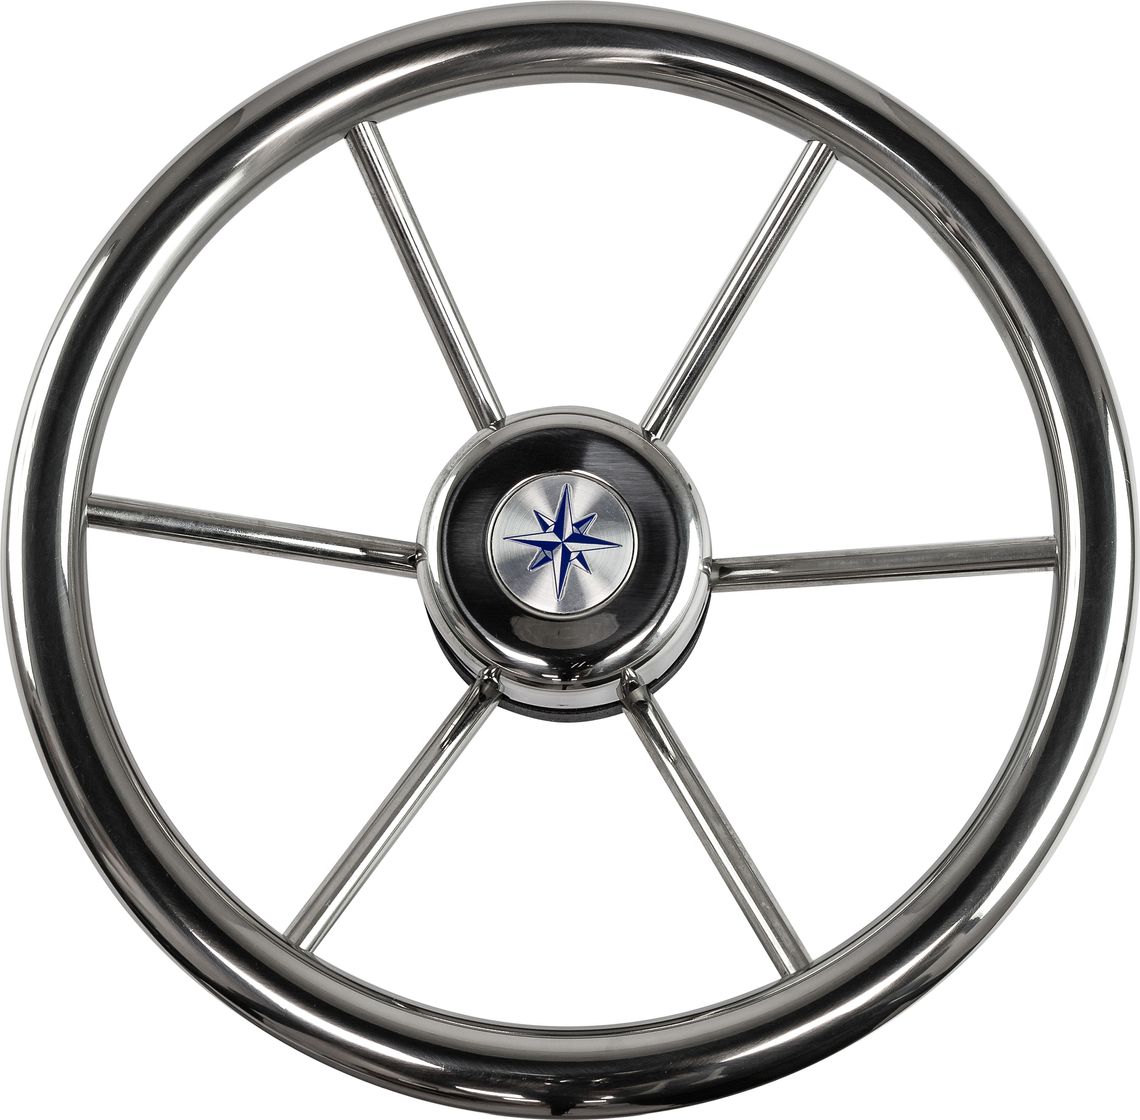 Рулевое колесо LEADER INOX нержавеющий обод серебряные спицы д. 320 мм VN7332-22